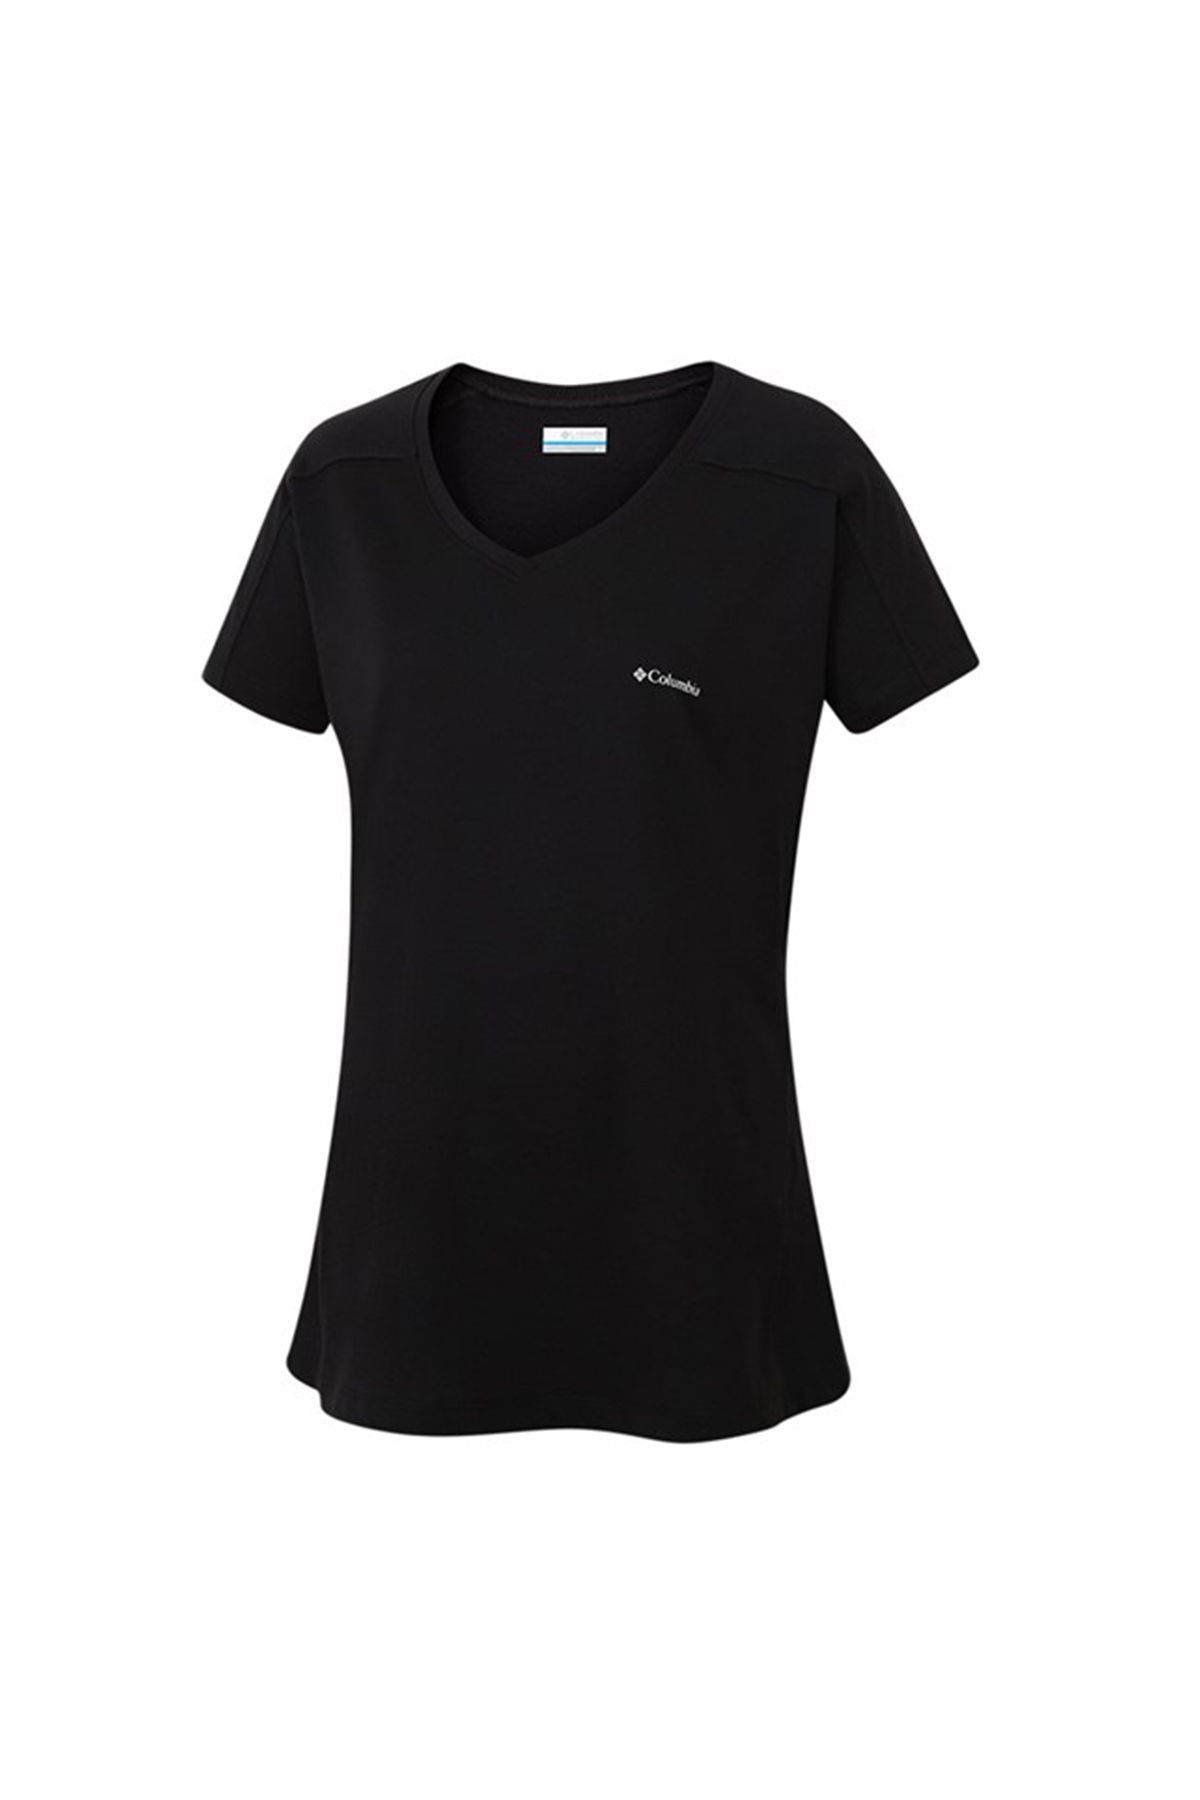 Columbia Kadın Siyah T-shirt 9210001010-00010